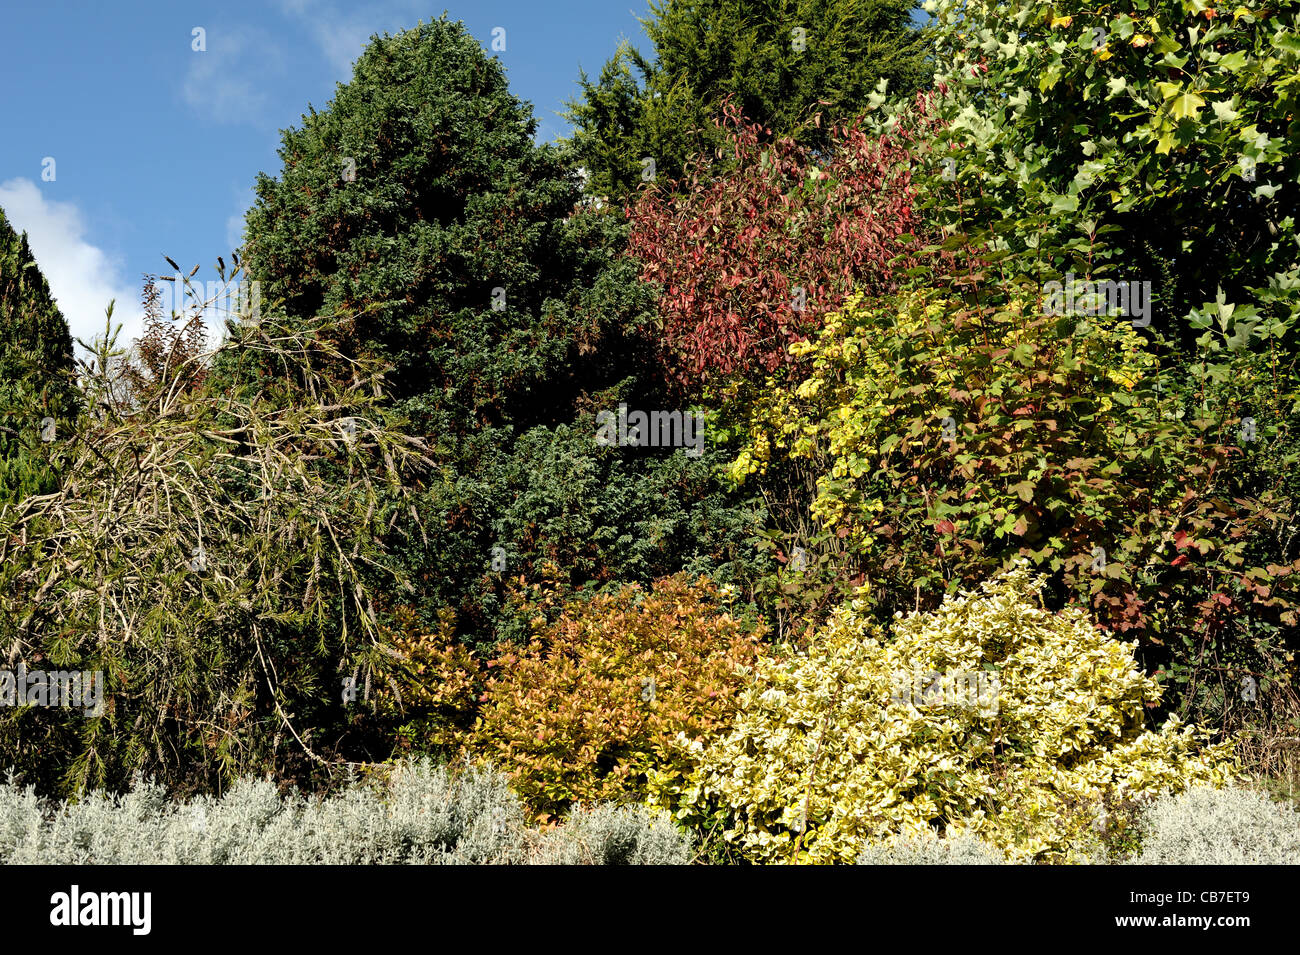 Devon en terrasse jardin d'arbustes et de petits arbres avec une gamme de couleurs d'automne Banque D'Images